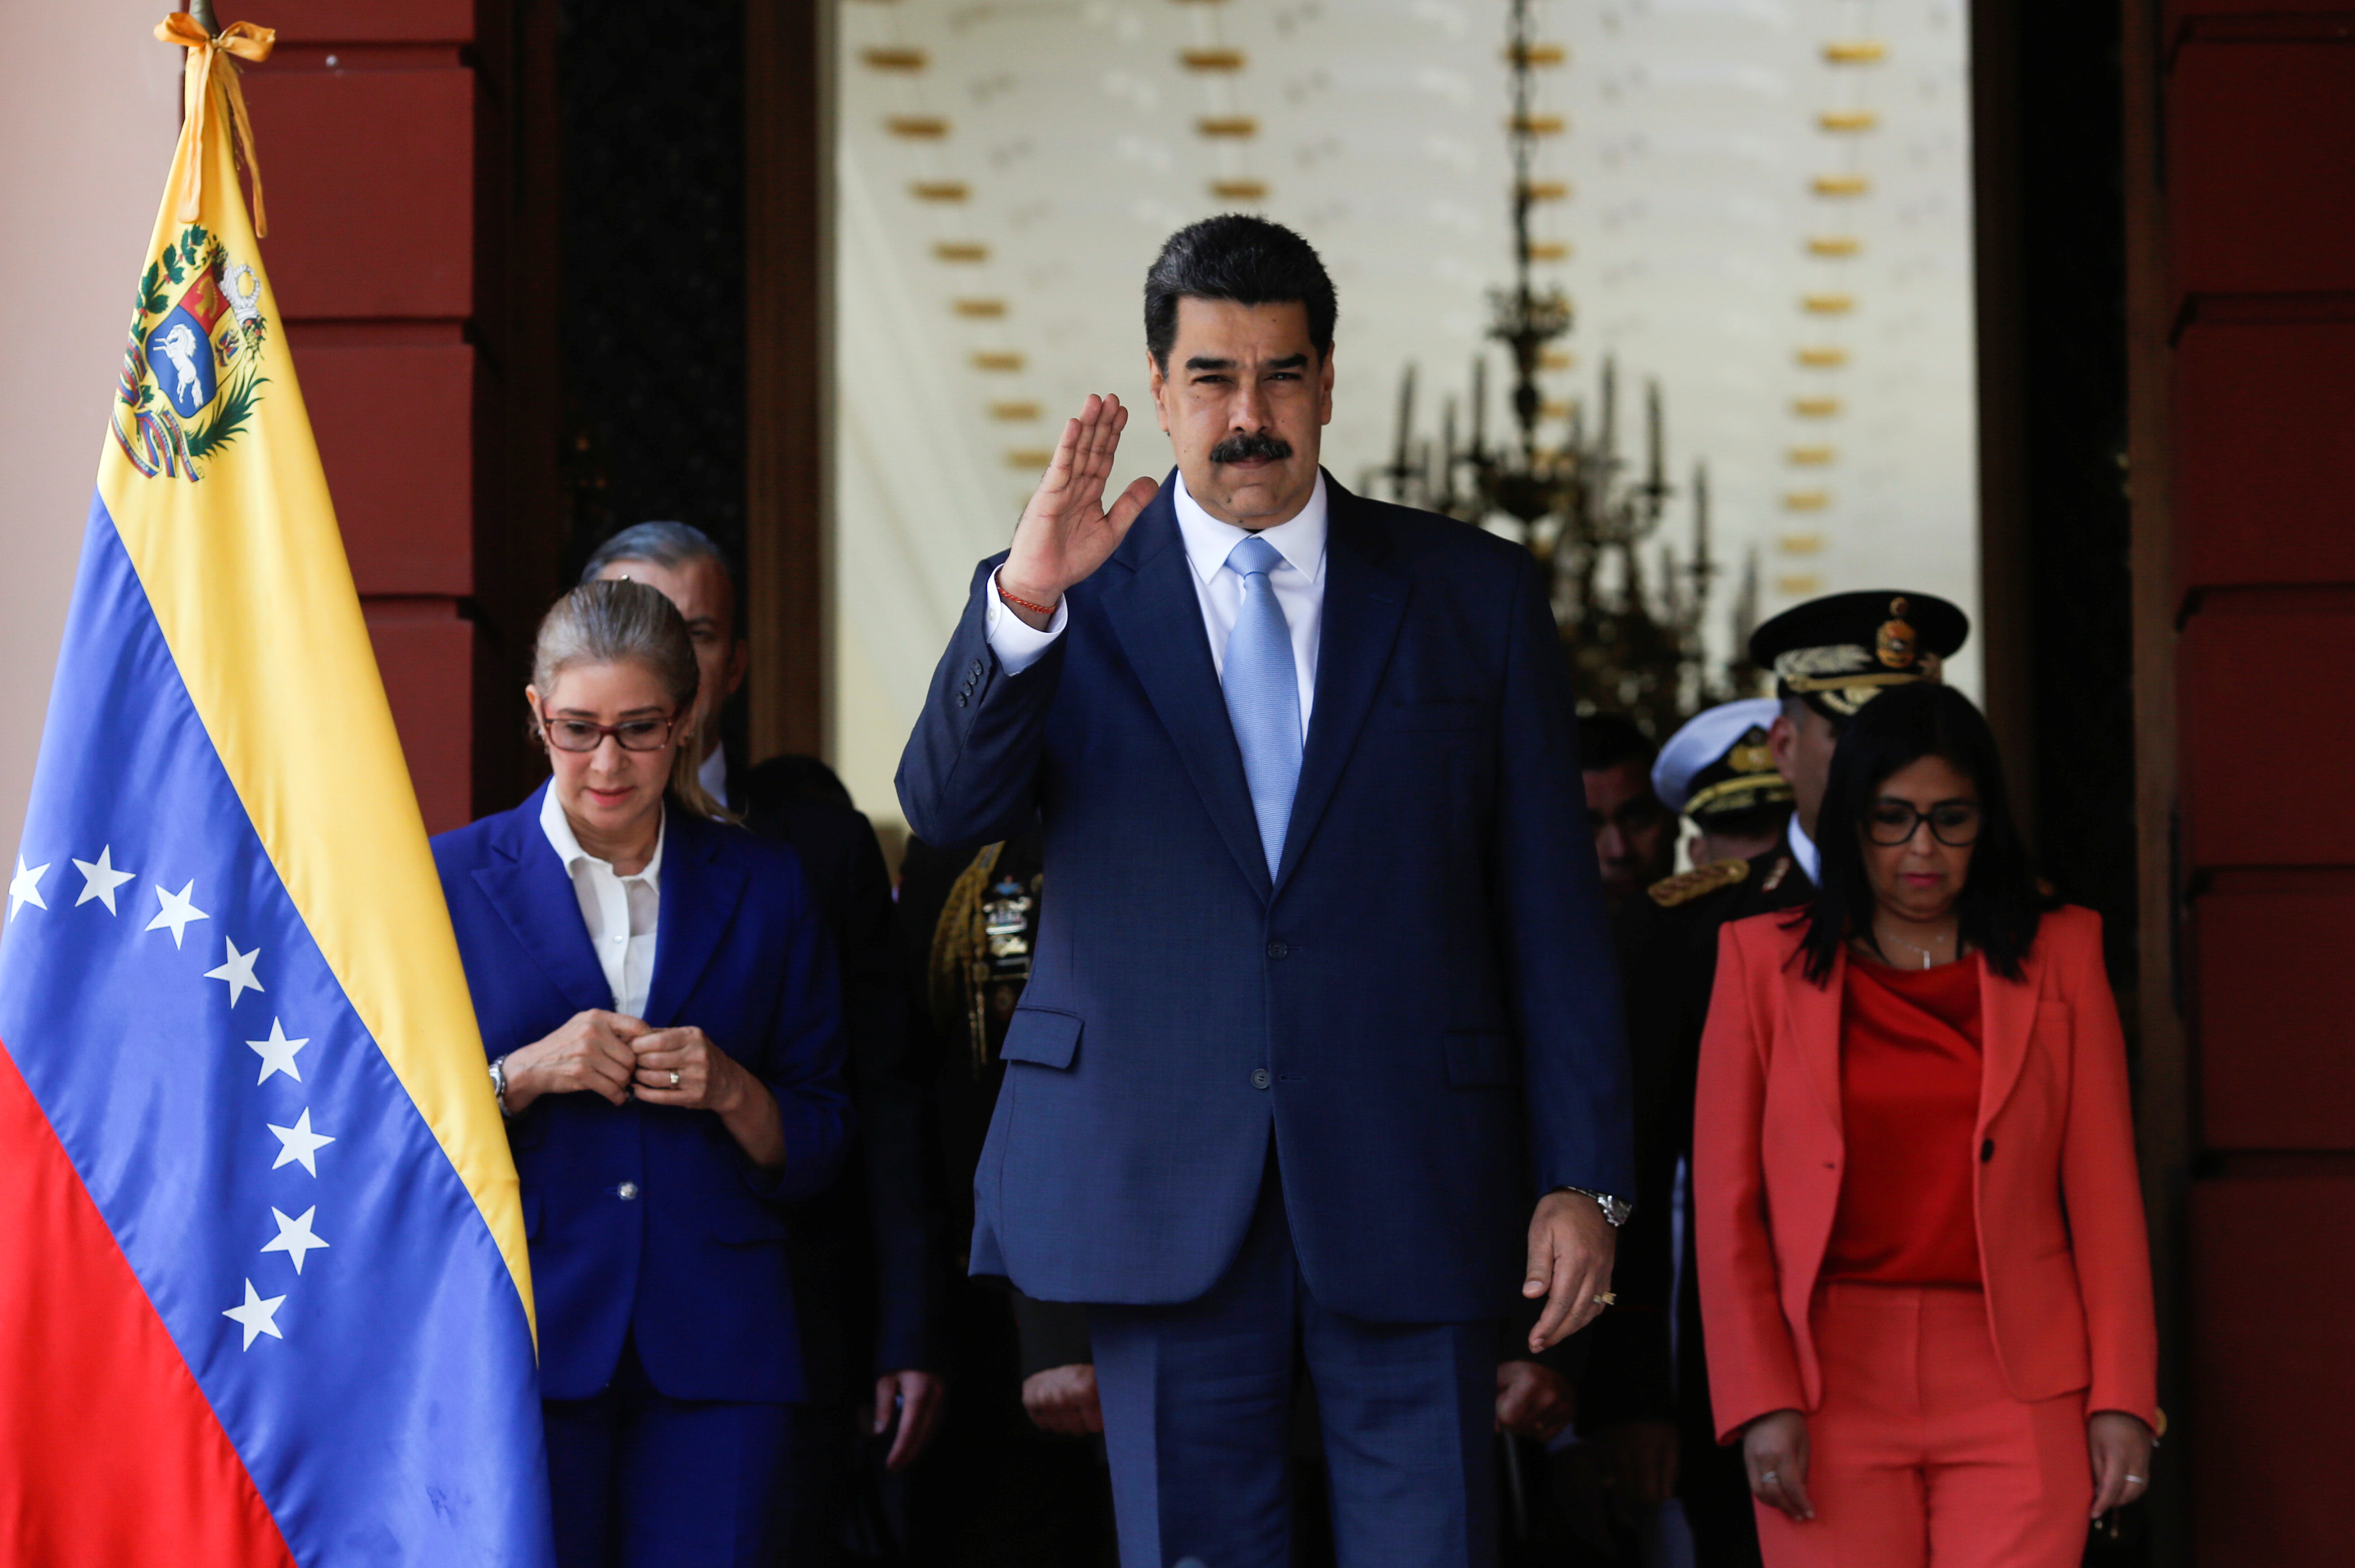 La oposición venezolana acusó a la dictadura de Maduro de saquear los recursos del país en medio de los nuevos escándalos de corrupción